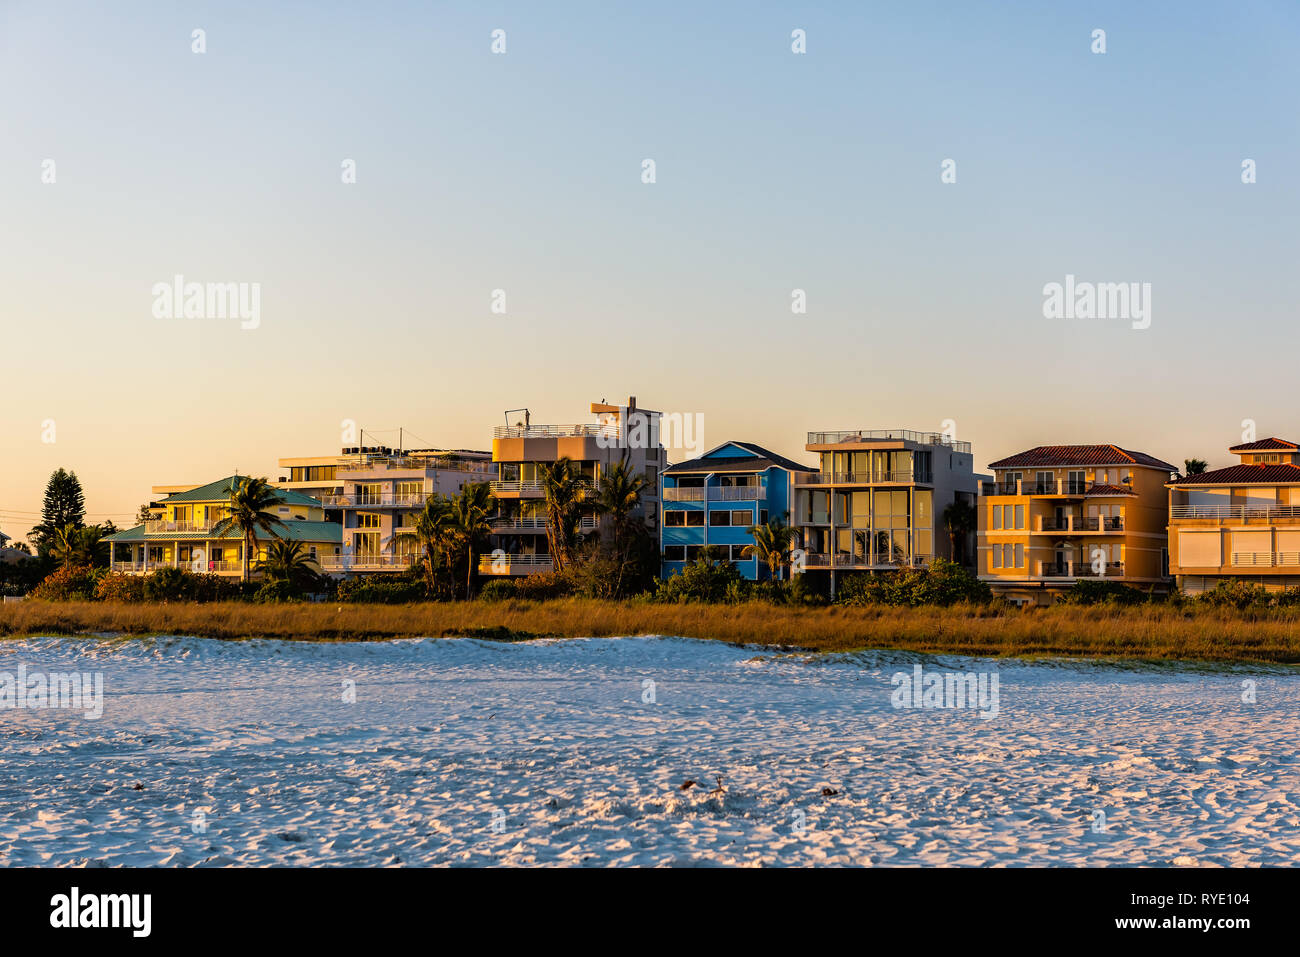 Sarasota, USA Sonnenuntergang in Siesta Key, Florida mit Küste Küste Häuser Ferienwohnungen am Golf von Mexiko Strand Ufer mit niemand Stockfoto